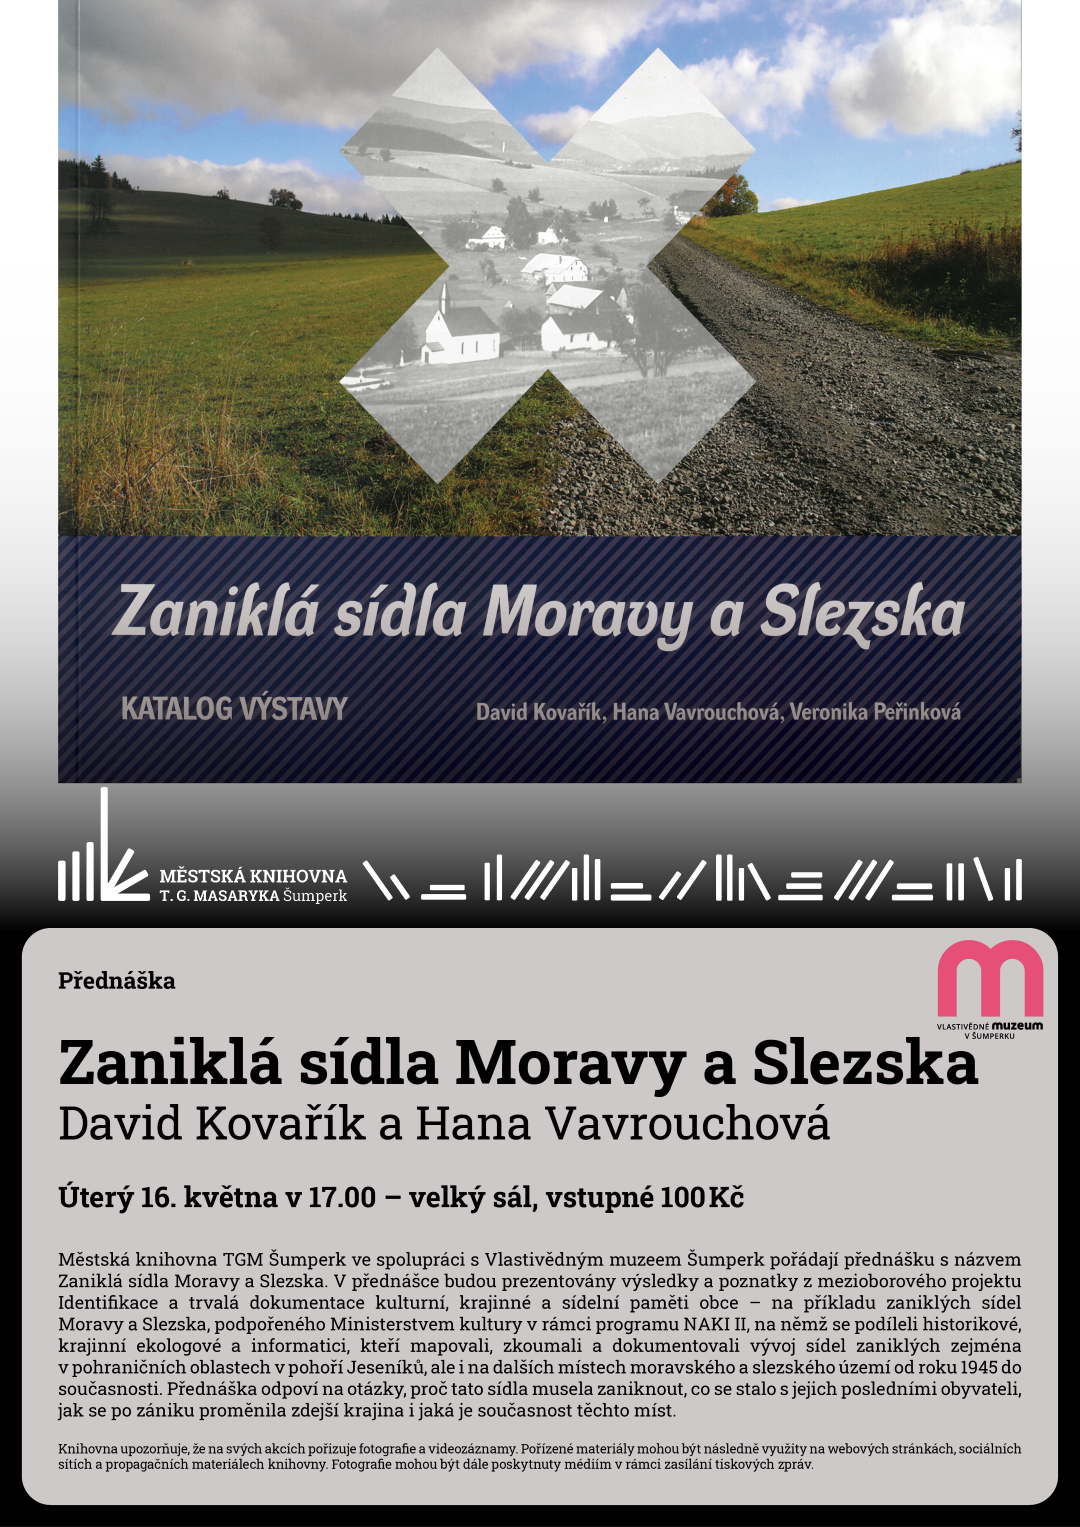 Zaniklá sídla Moravy a Slezska